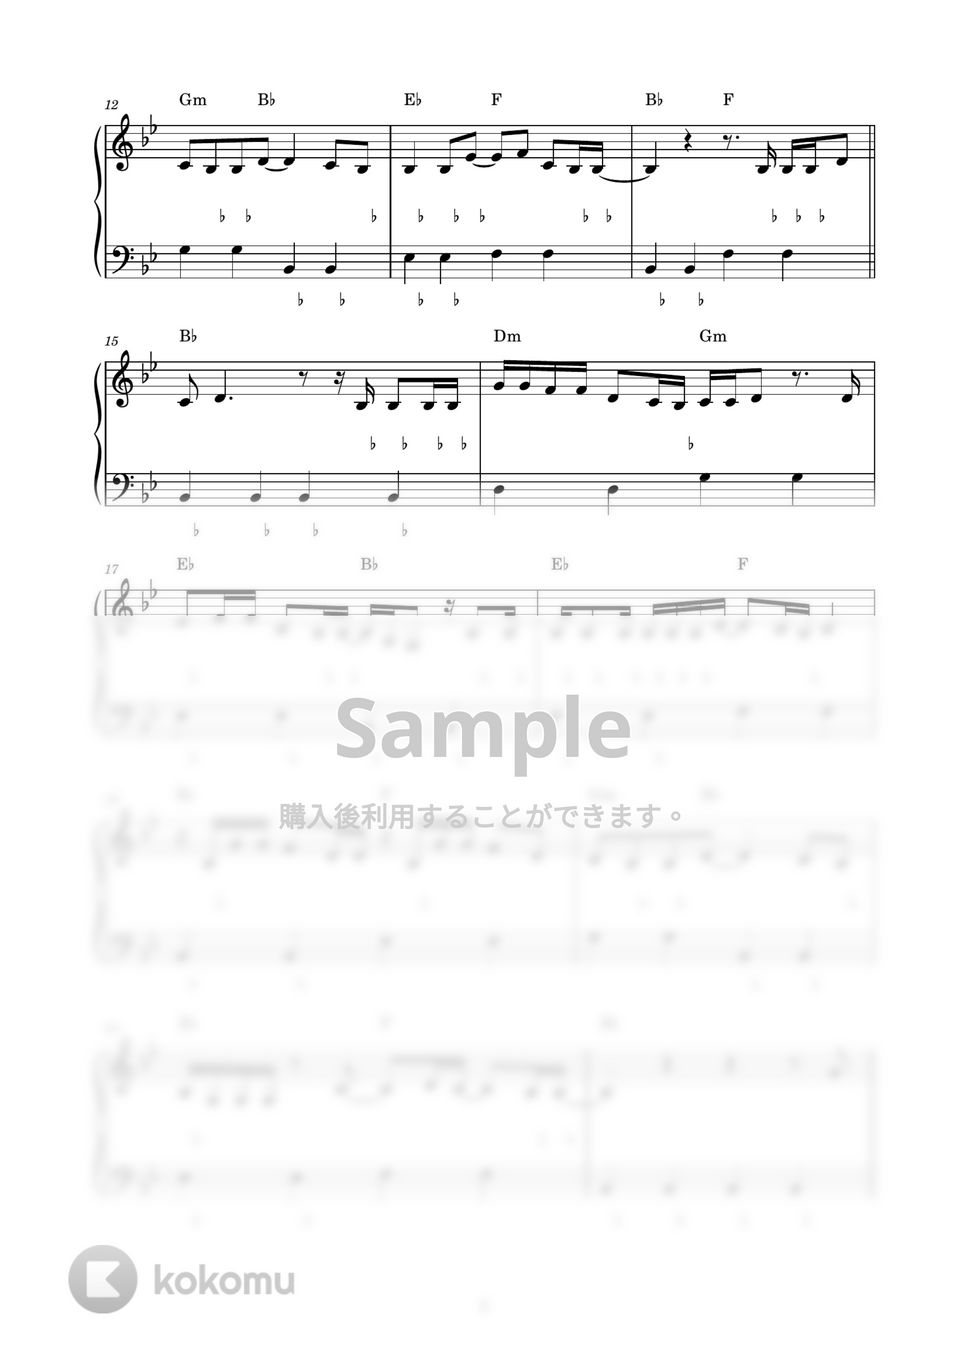 あいみょん - 3636 (ピアノ楽譜 / かんたん両手 / 歌詞付き / ドレミ付き / 初心者向き) by piano.tokyo